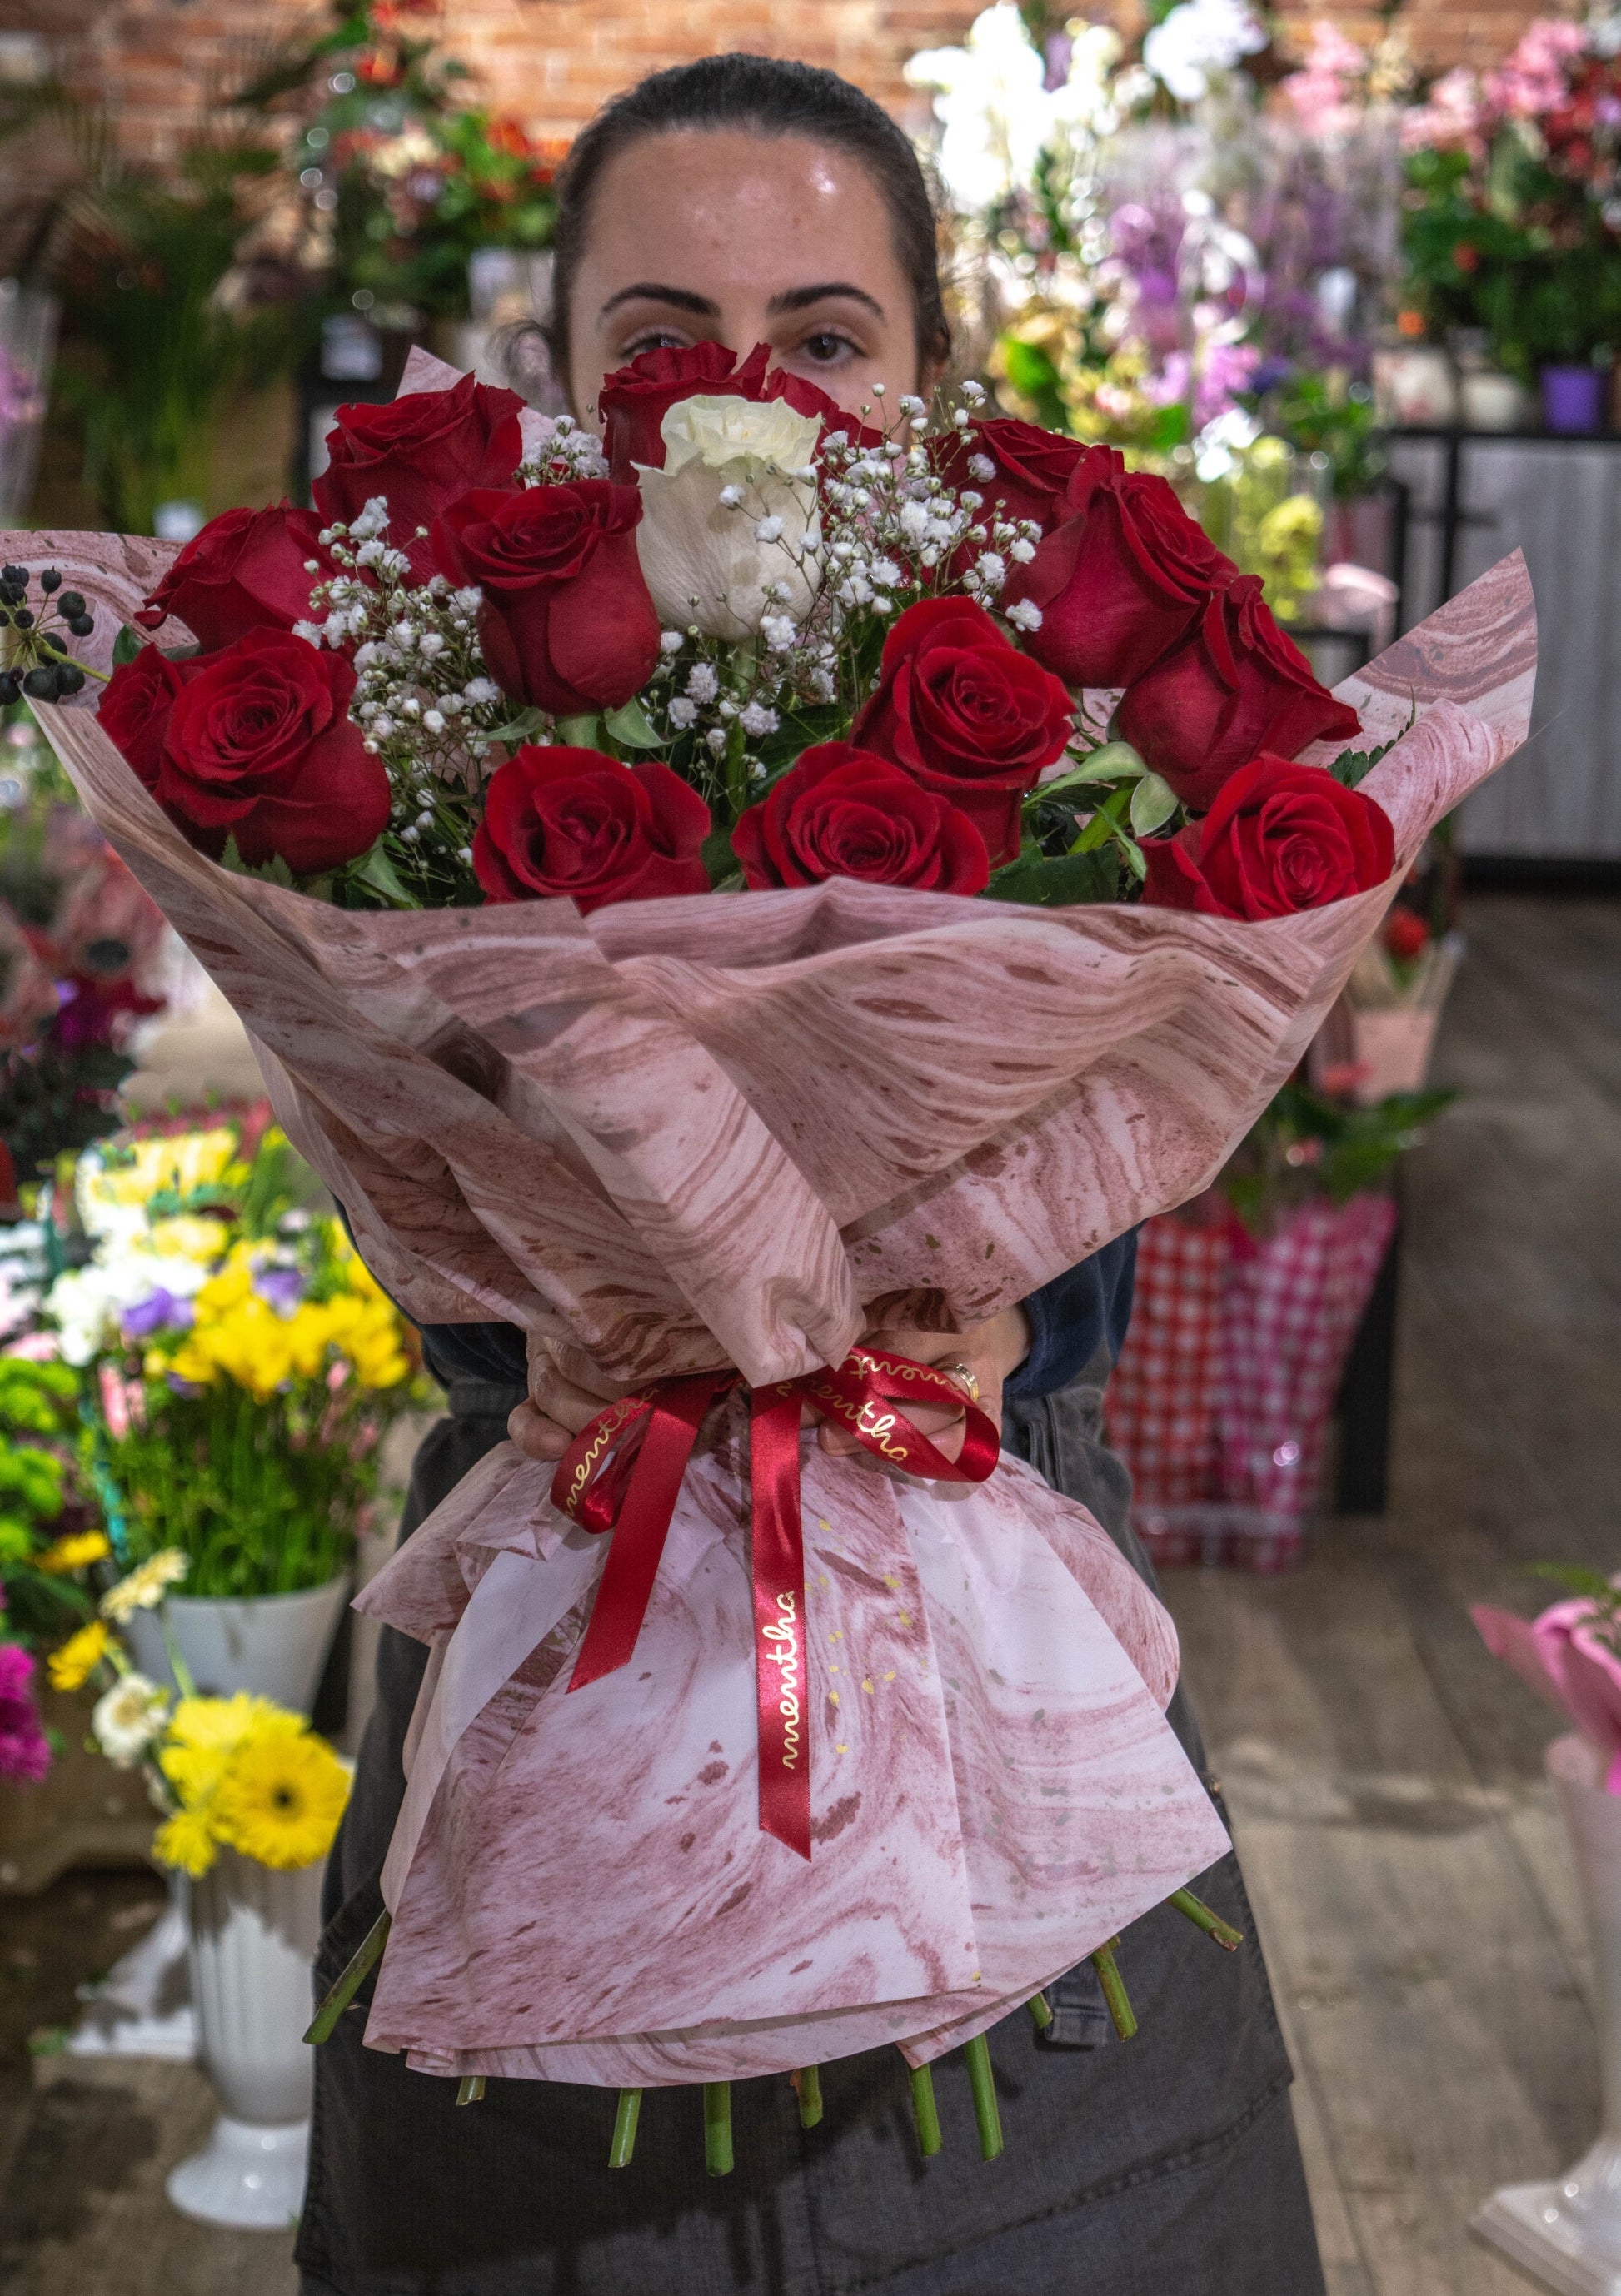 Cadou floral cu 19 trandafiri proaspeți și livrare GRATUITĂ Buchet cu 19 trandafiri și livrare rapidă și GRATUITĂ în Resita Flori proaspete și parfumate cu livrare GRATUITĂ în Resita Trandafiri roșii și albi în buchet de 19 cu livrare GRATUITĂ Buchet simplu și frumos cu 19 trandafiri proaspeți și livrare GRATUITĂ